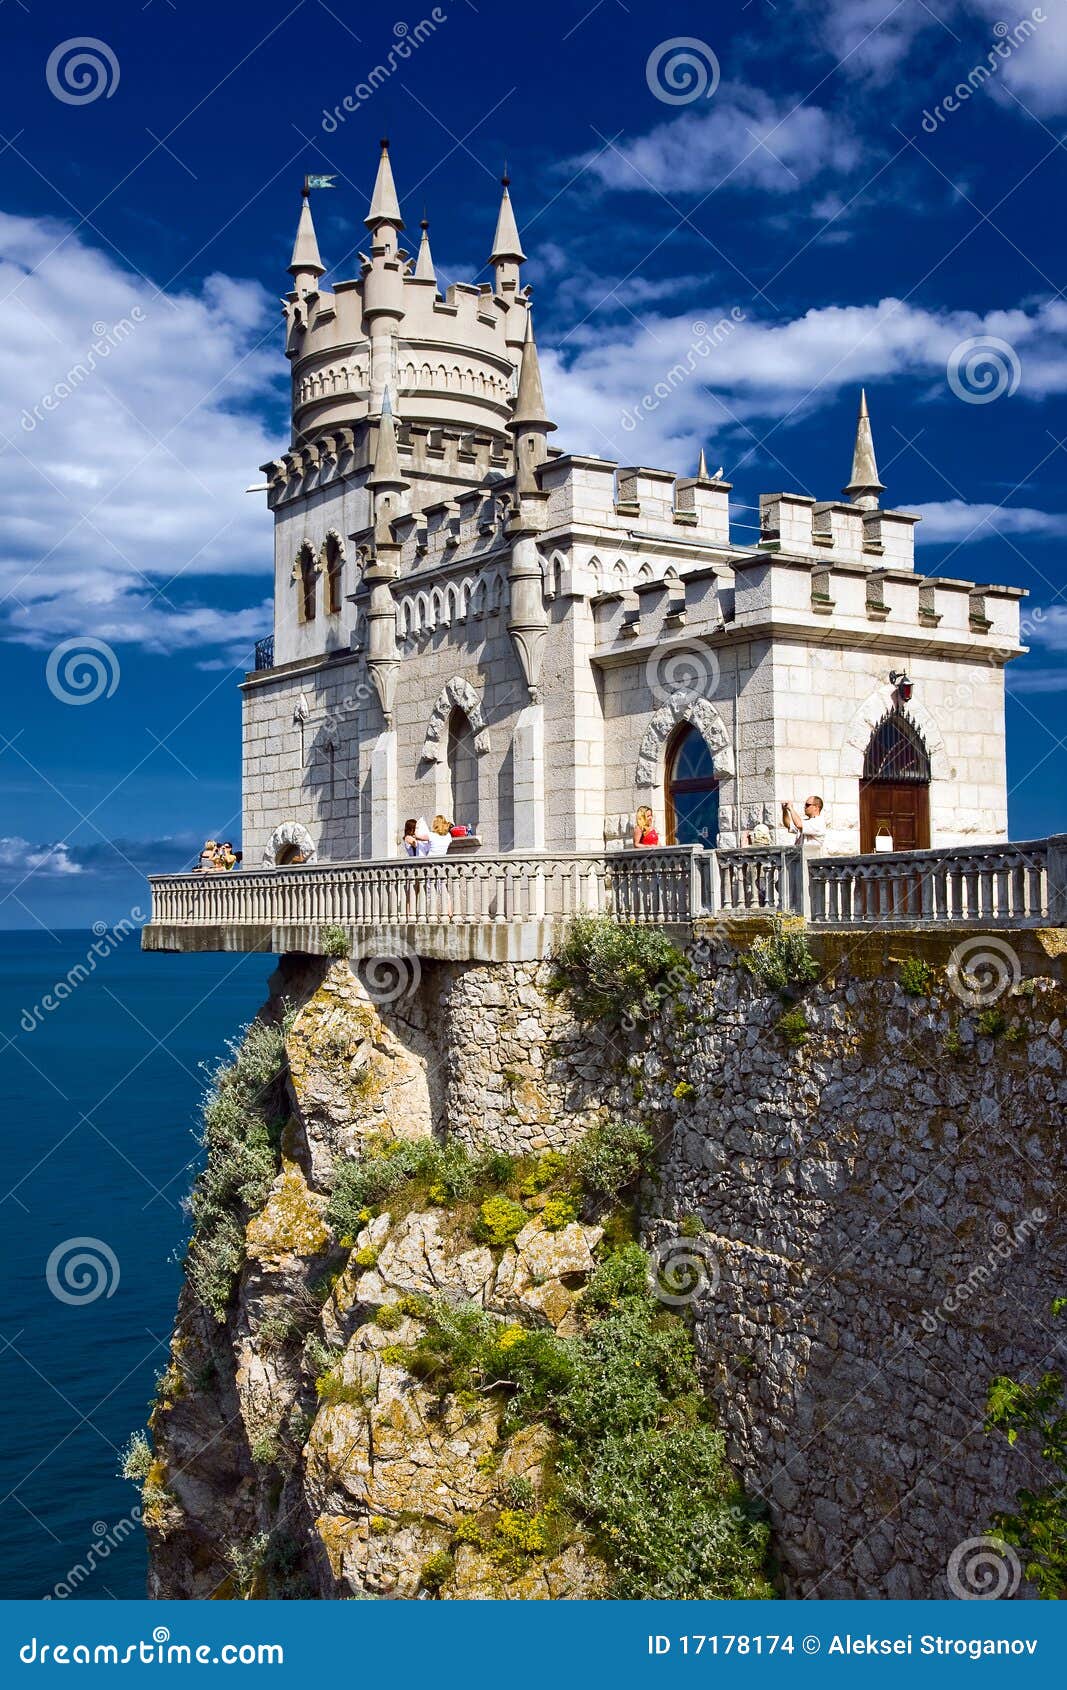 castle swallow's nest near yalta in crimea